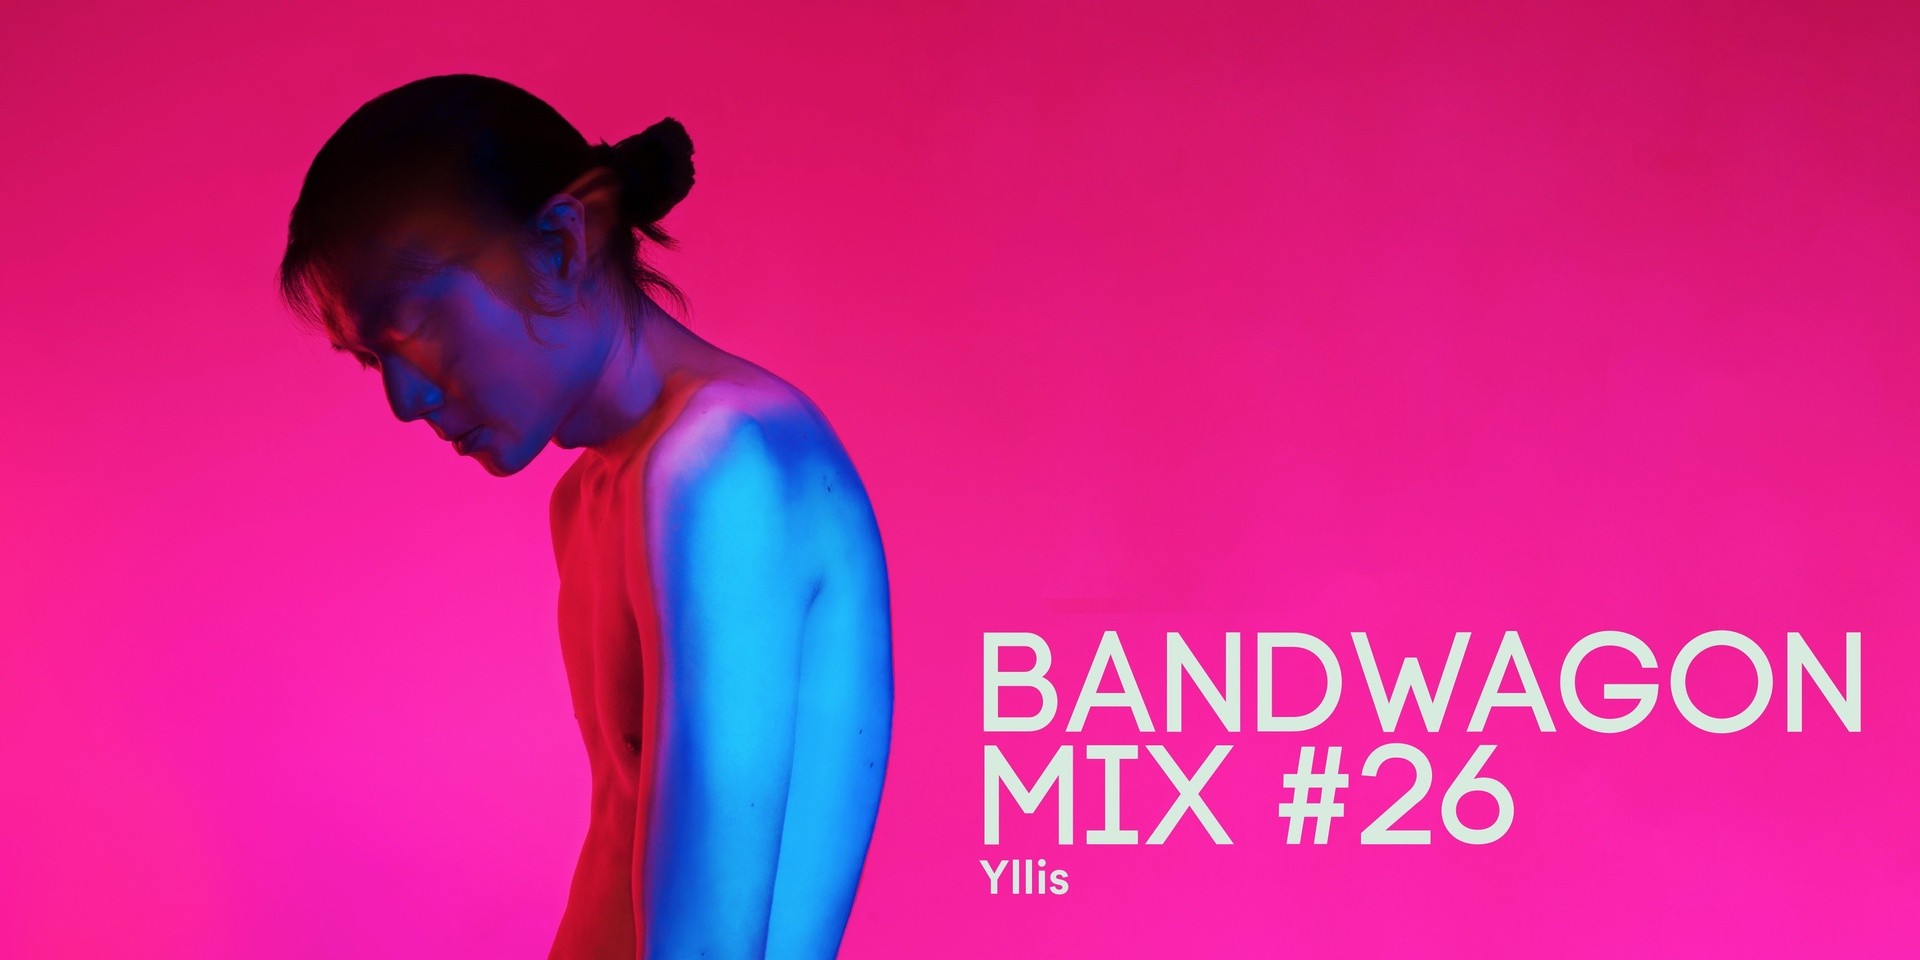 Bandwagon Mix #26: Yllis